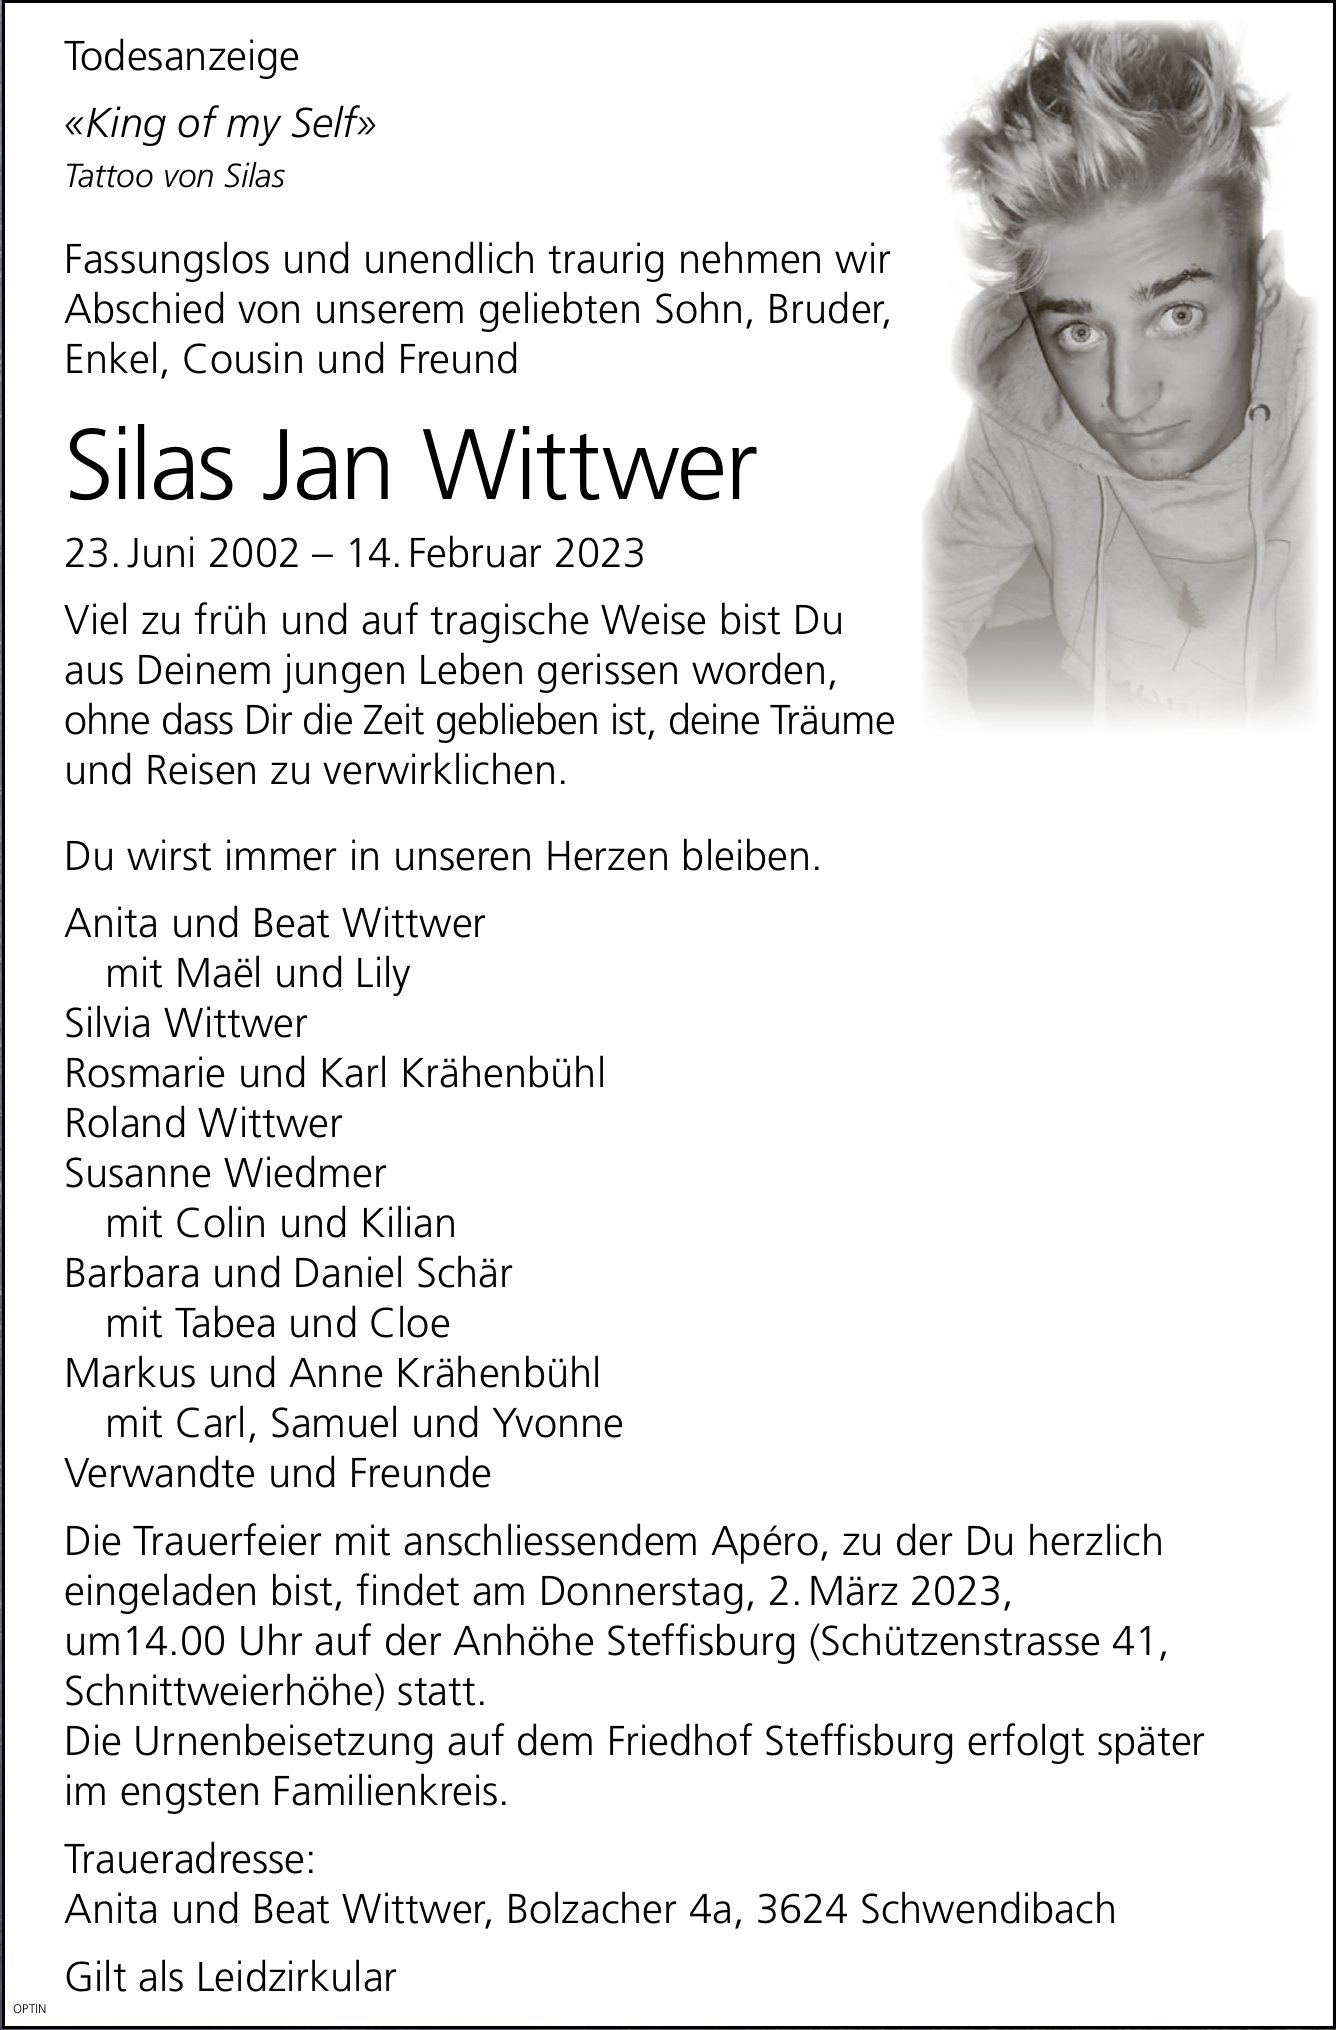 Silas Jan Wittwer, Februar 2023 / TA